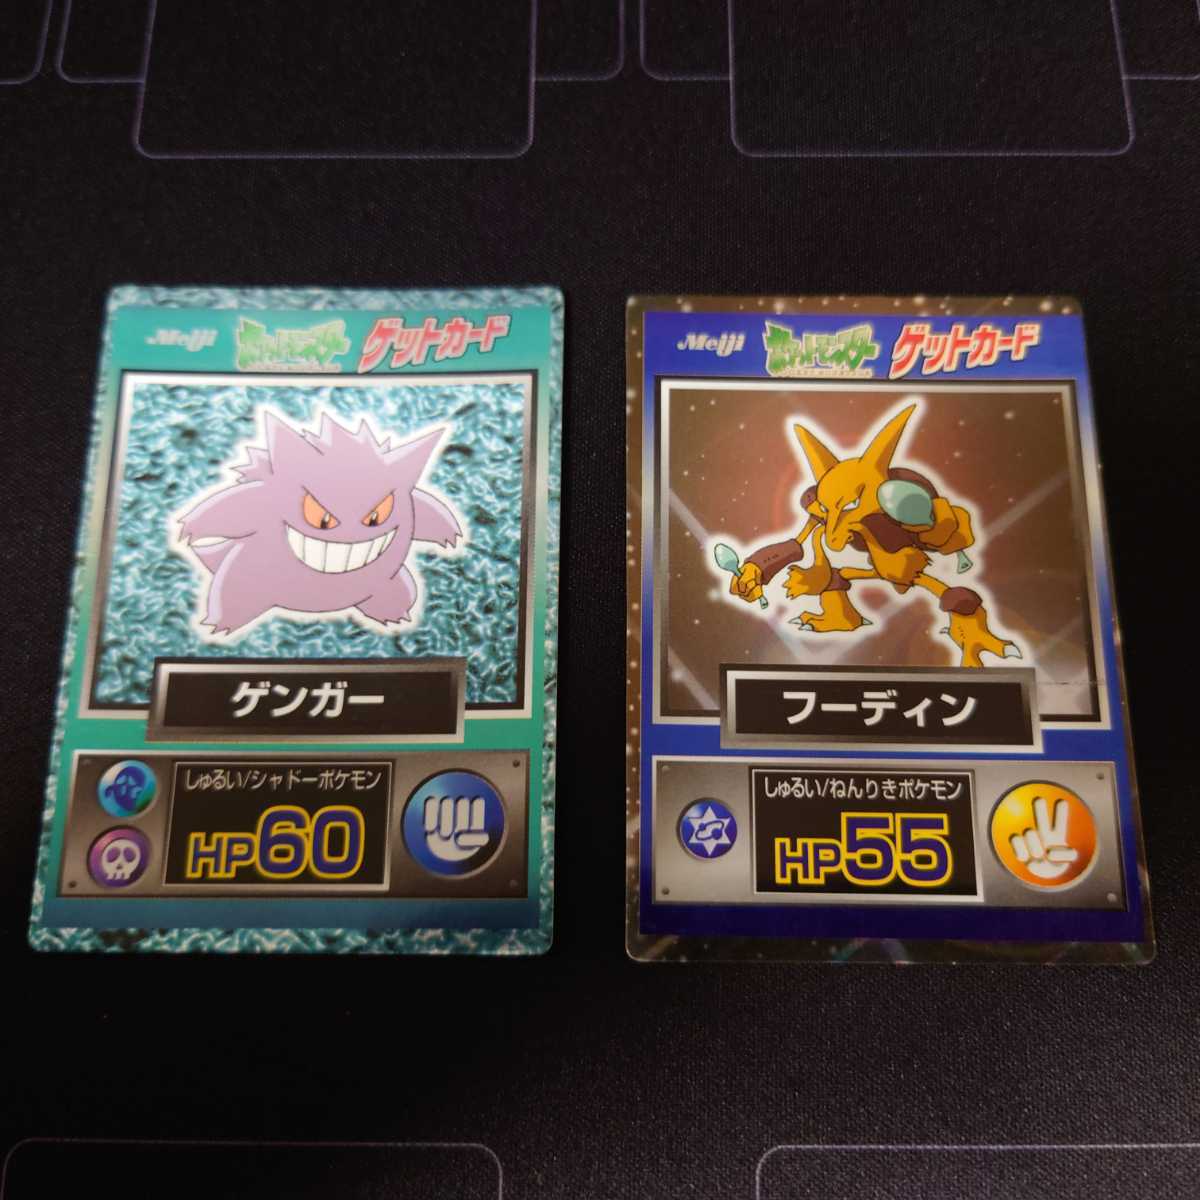 ポケモン Pokemon 明治 Meiji ゲットカード ピカチュウ リザードン 